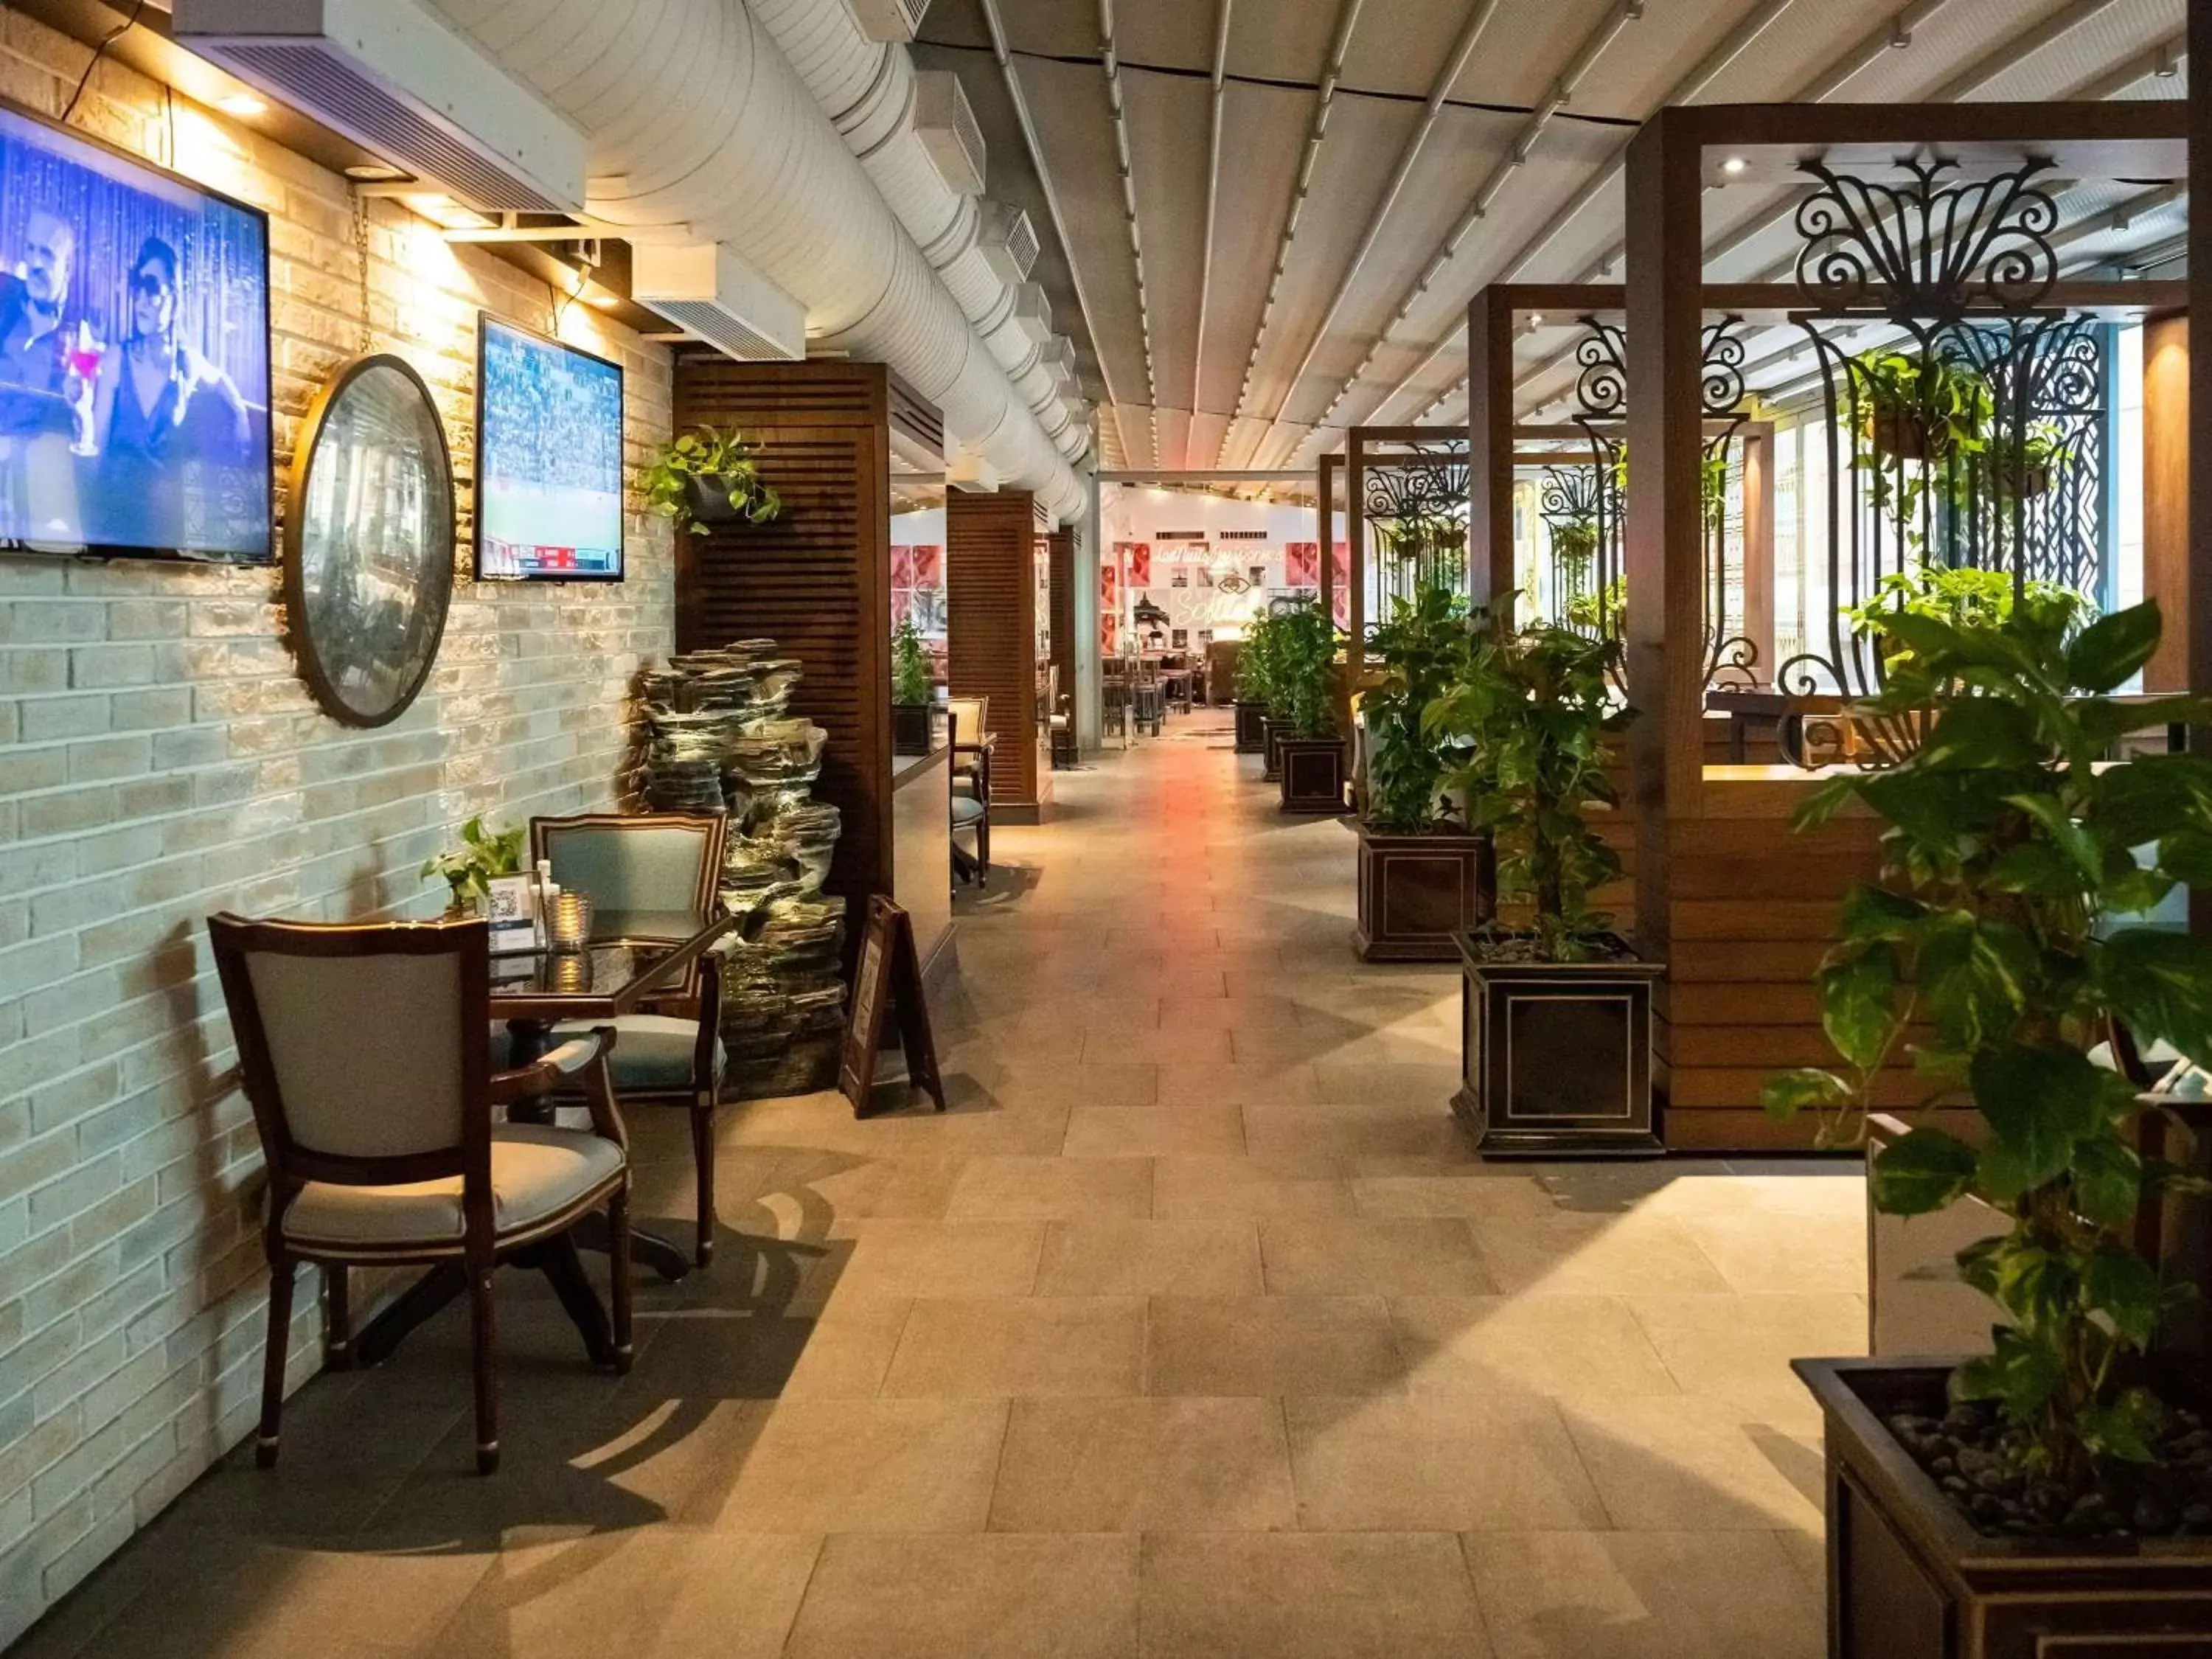 Restaurant/places to eat in Sofitel Dubai Downtown